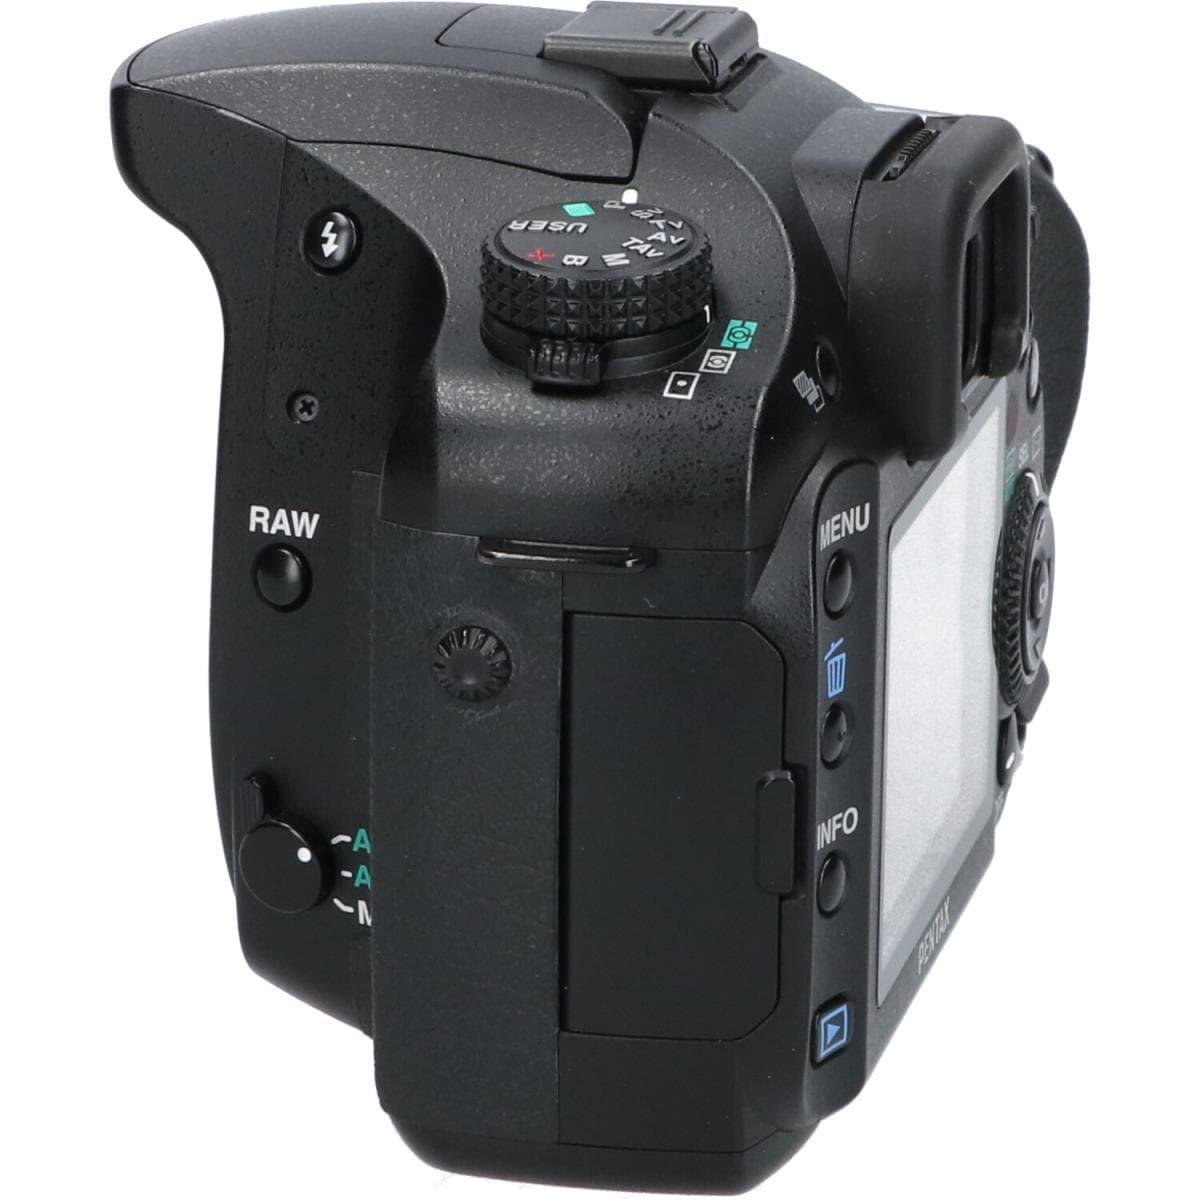 カメラPENTAX　K20D-W